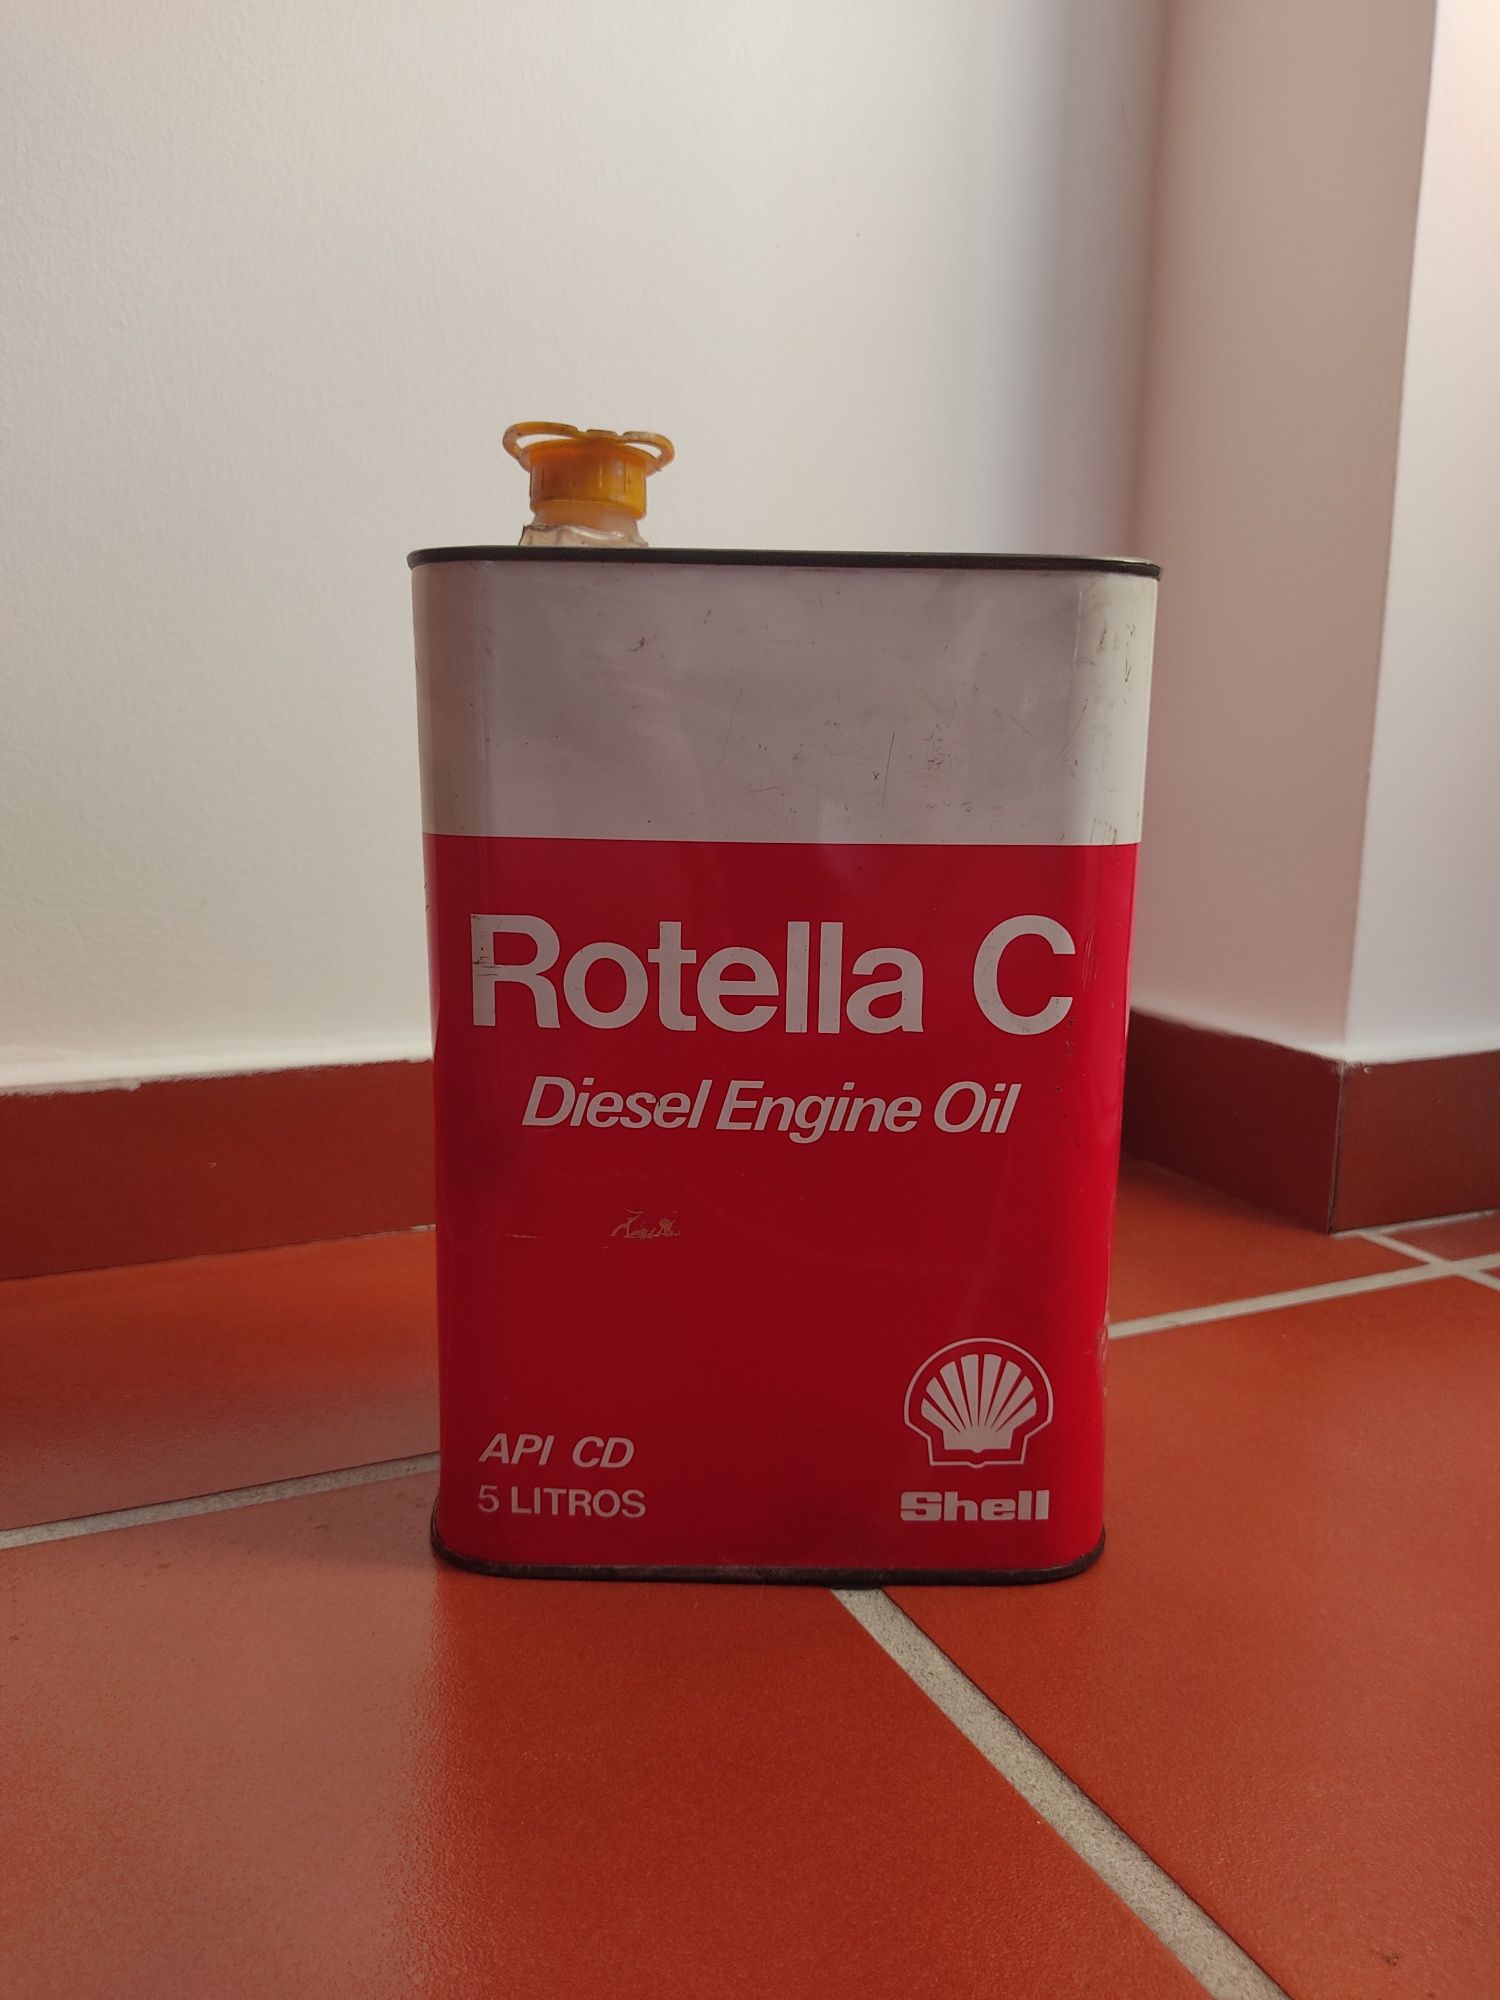 Lata de Óleo - Rotella C Shell 5 Litros